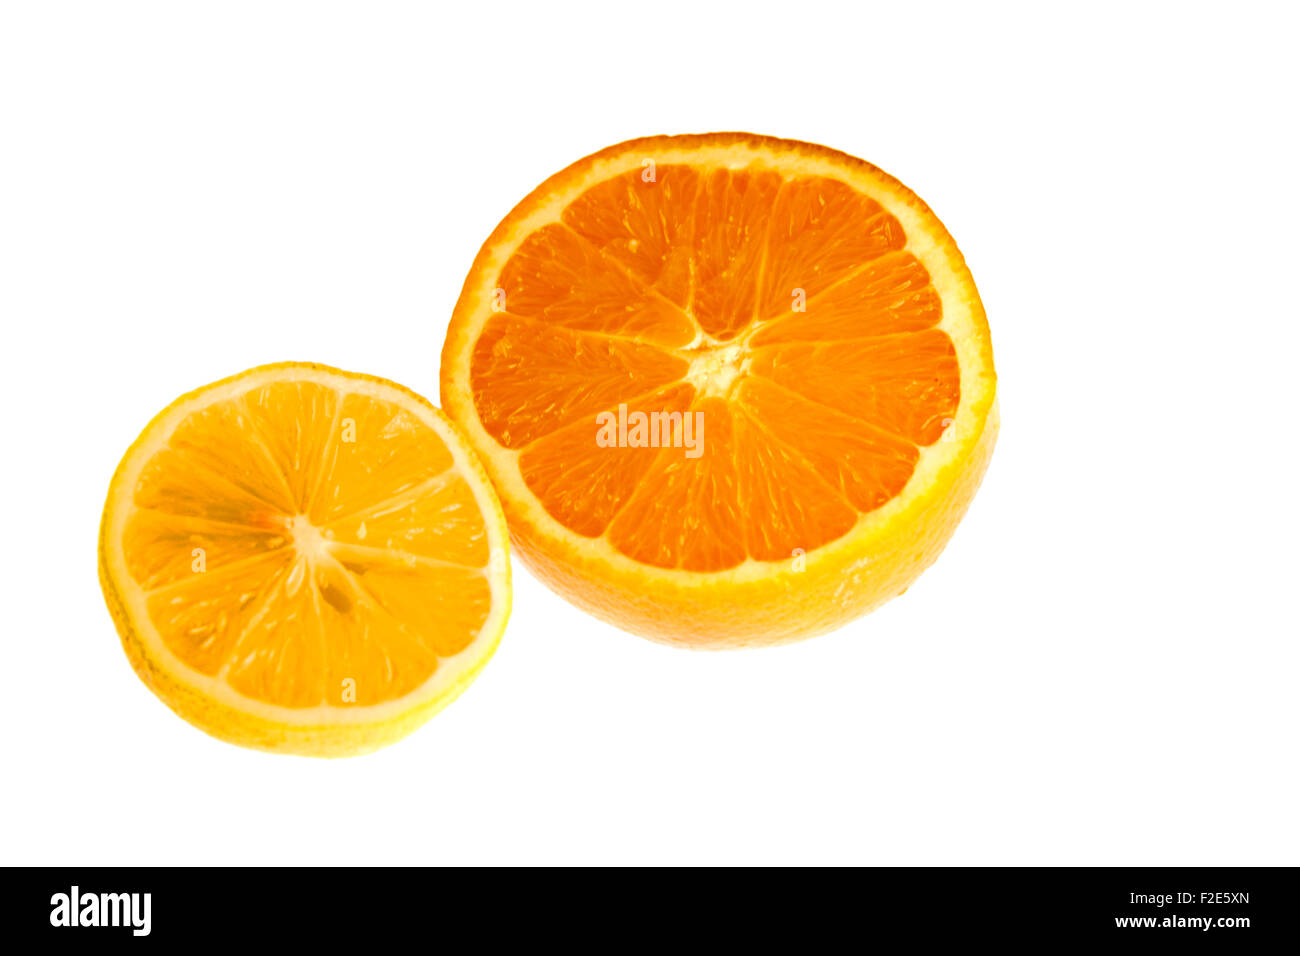 Suedfruechte : Zitrone, mandarine, clémentine, Orange - Symbolbild Nahrungsmittel. Banque D'Images